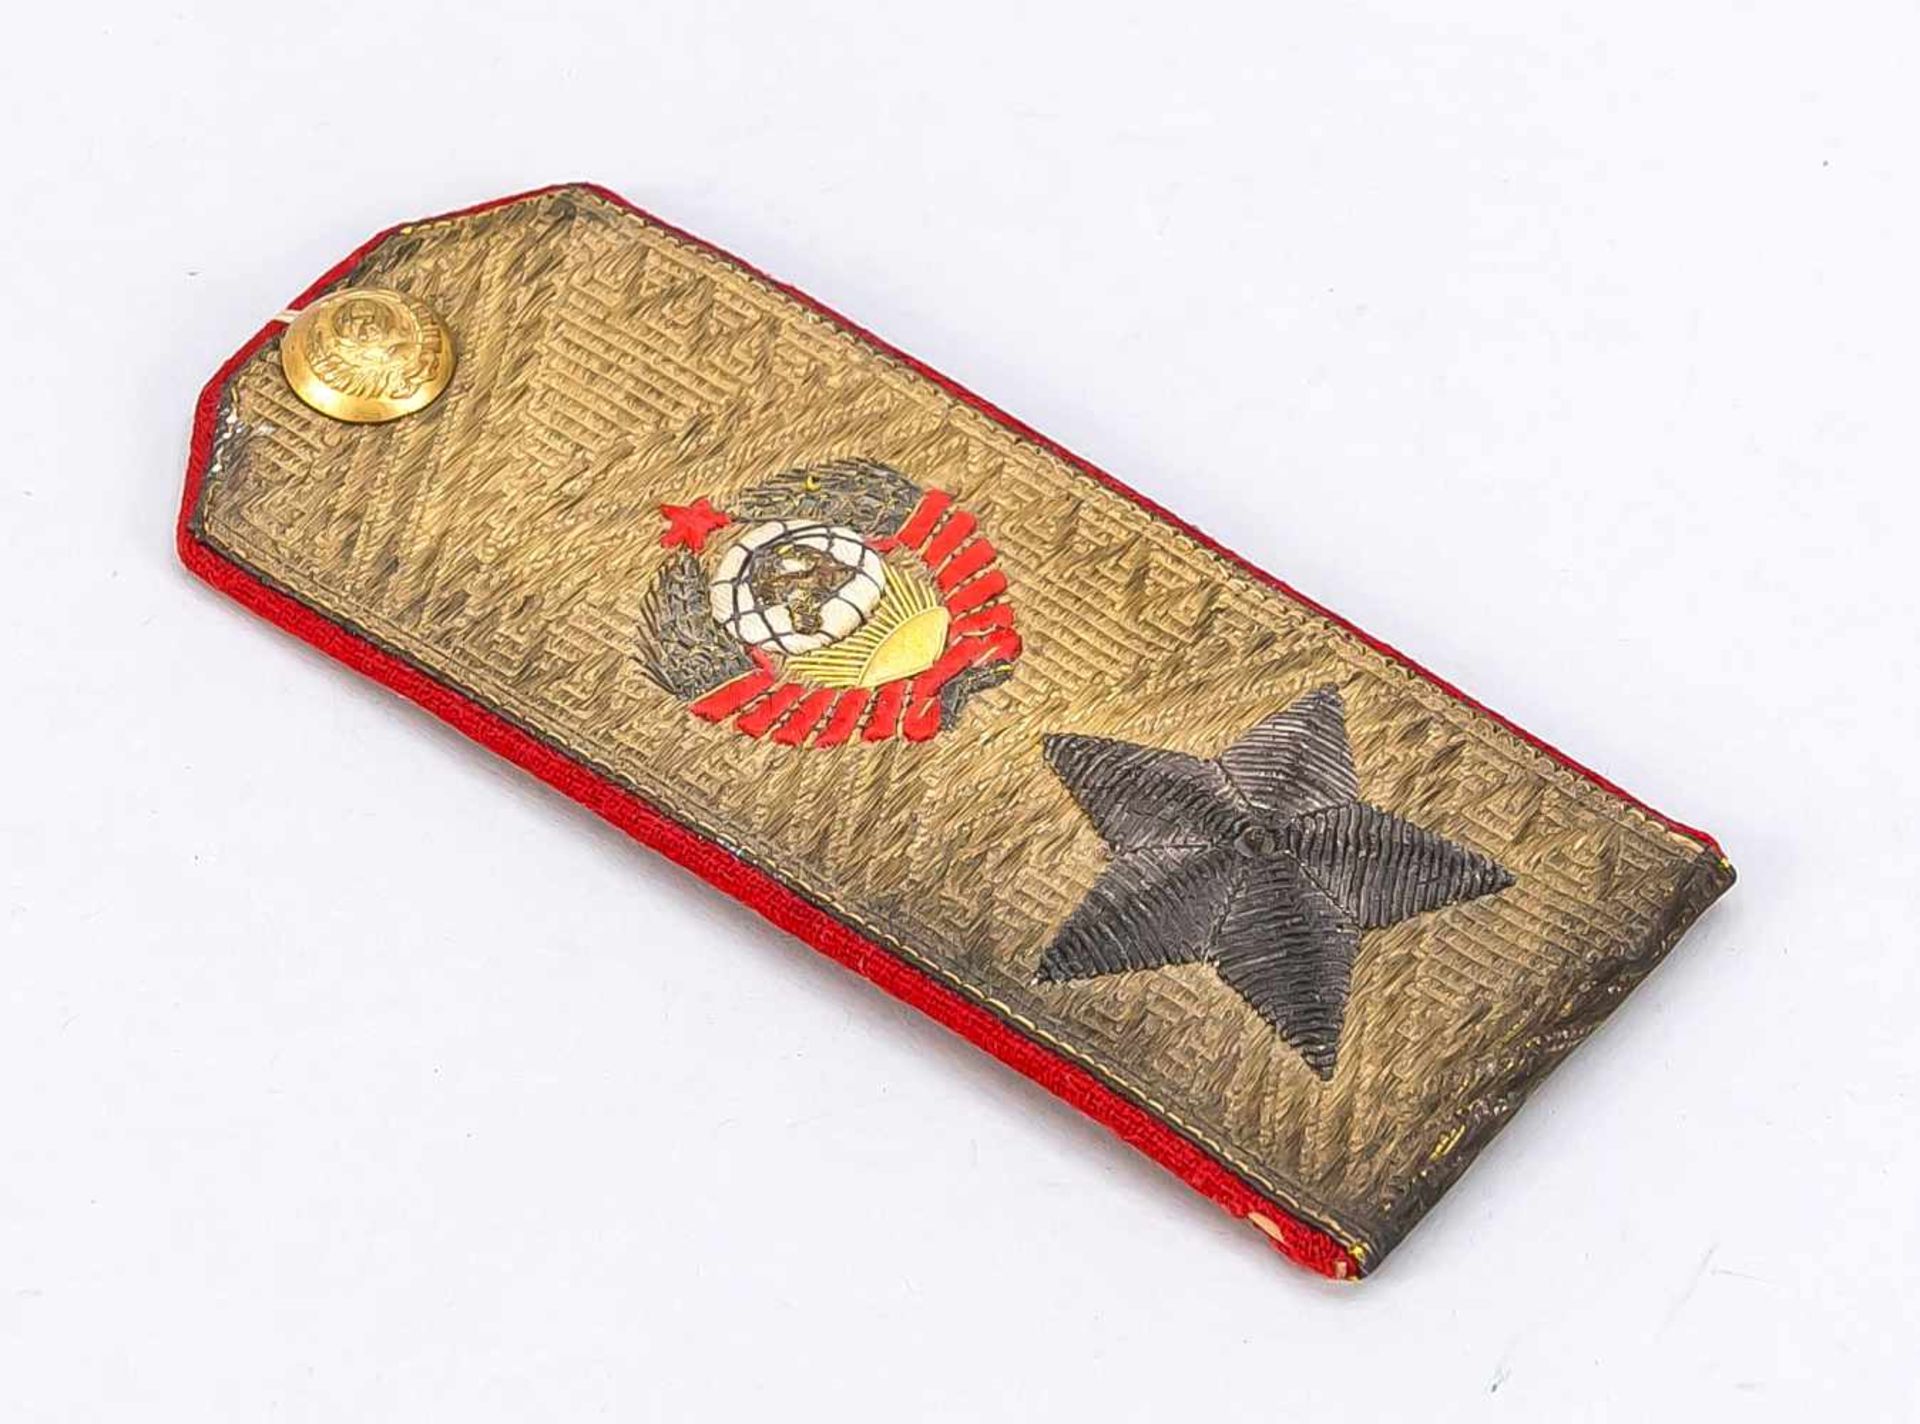 Epaulette eines russischen Marshalls der Roten Armee, Russland (UdSSR), Mitte 20. Jh.